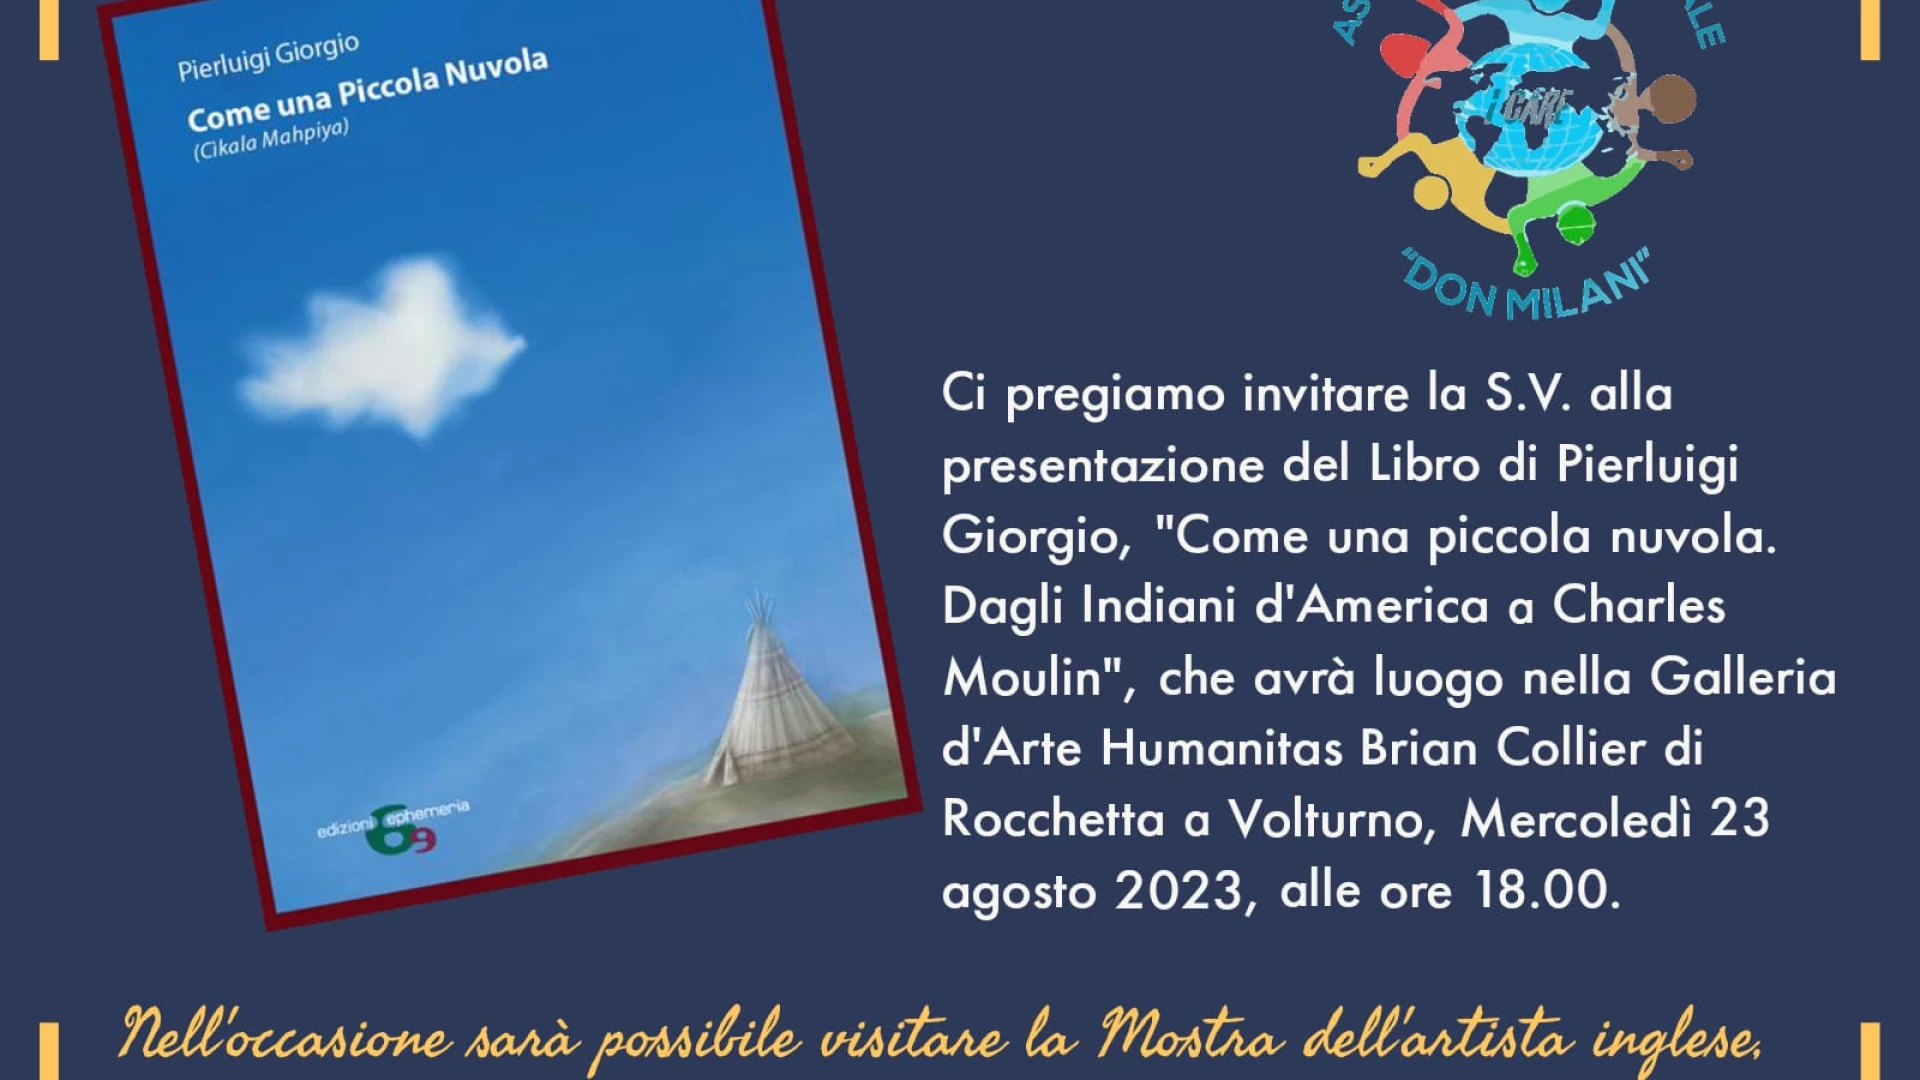 Rocchetta a Volturno: si presenta il libro di Pierluigi Giorgio dal titolo "Come una Piccola Nuvola". Evento all'interno della galleria d'arte Humanitas